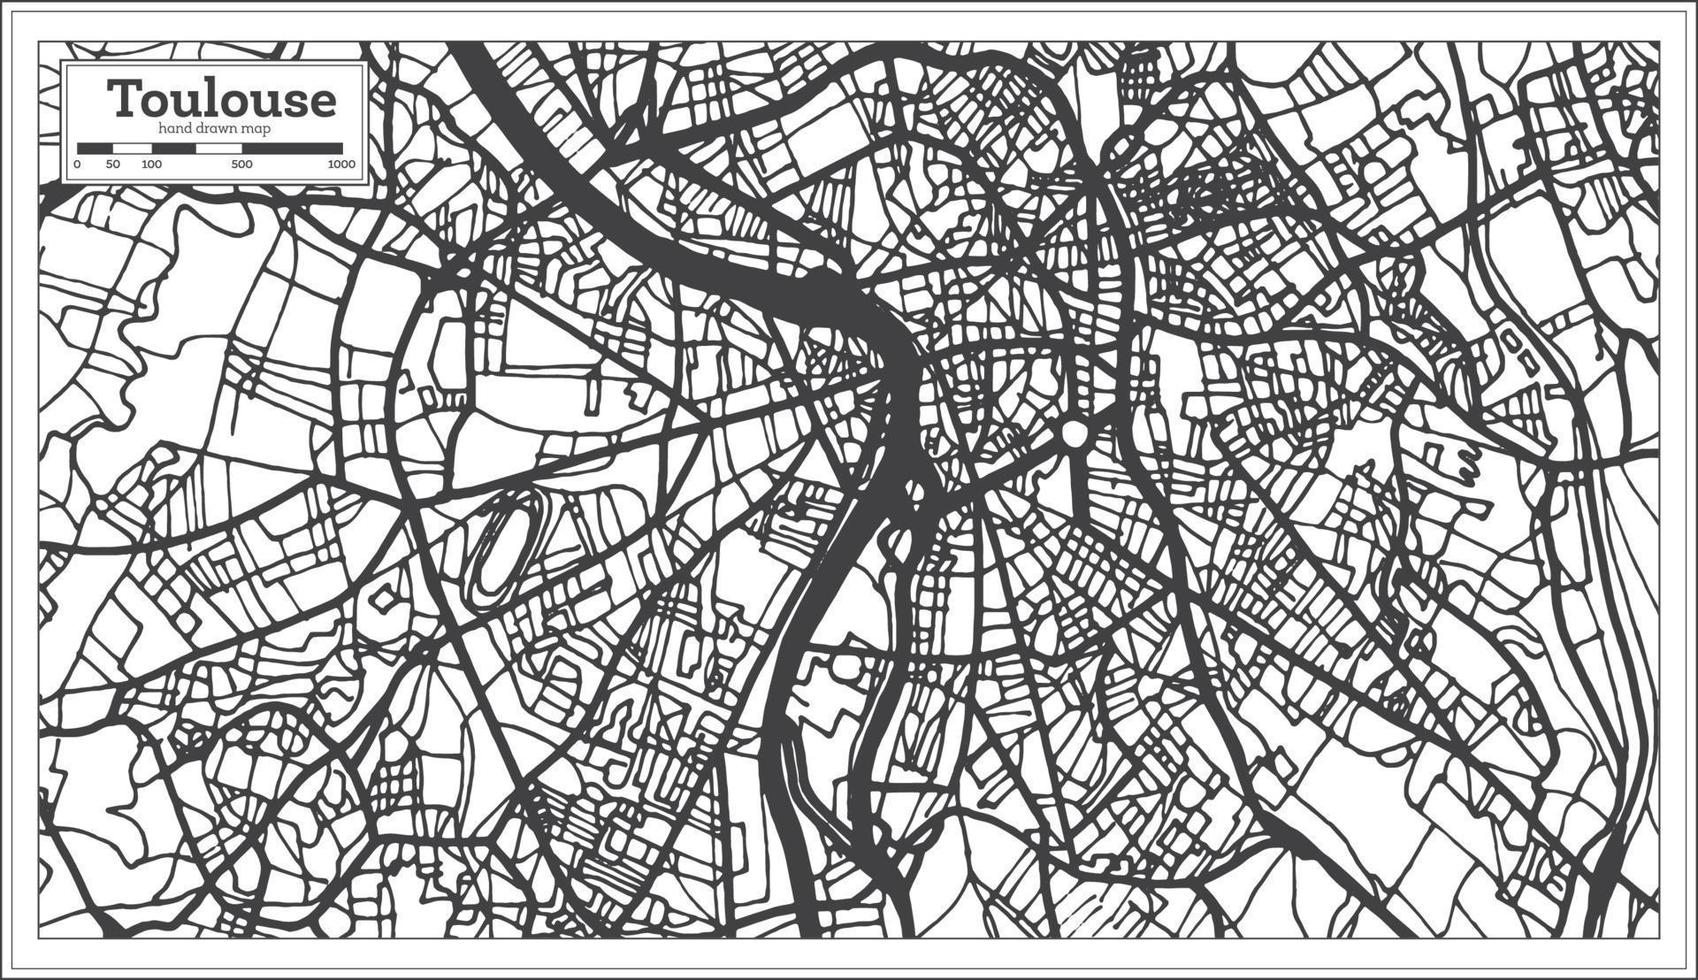 plan de la ville de toulouse france dans un style rétro. carte muette. vecteur